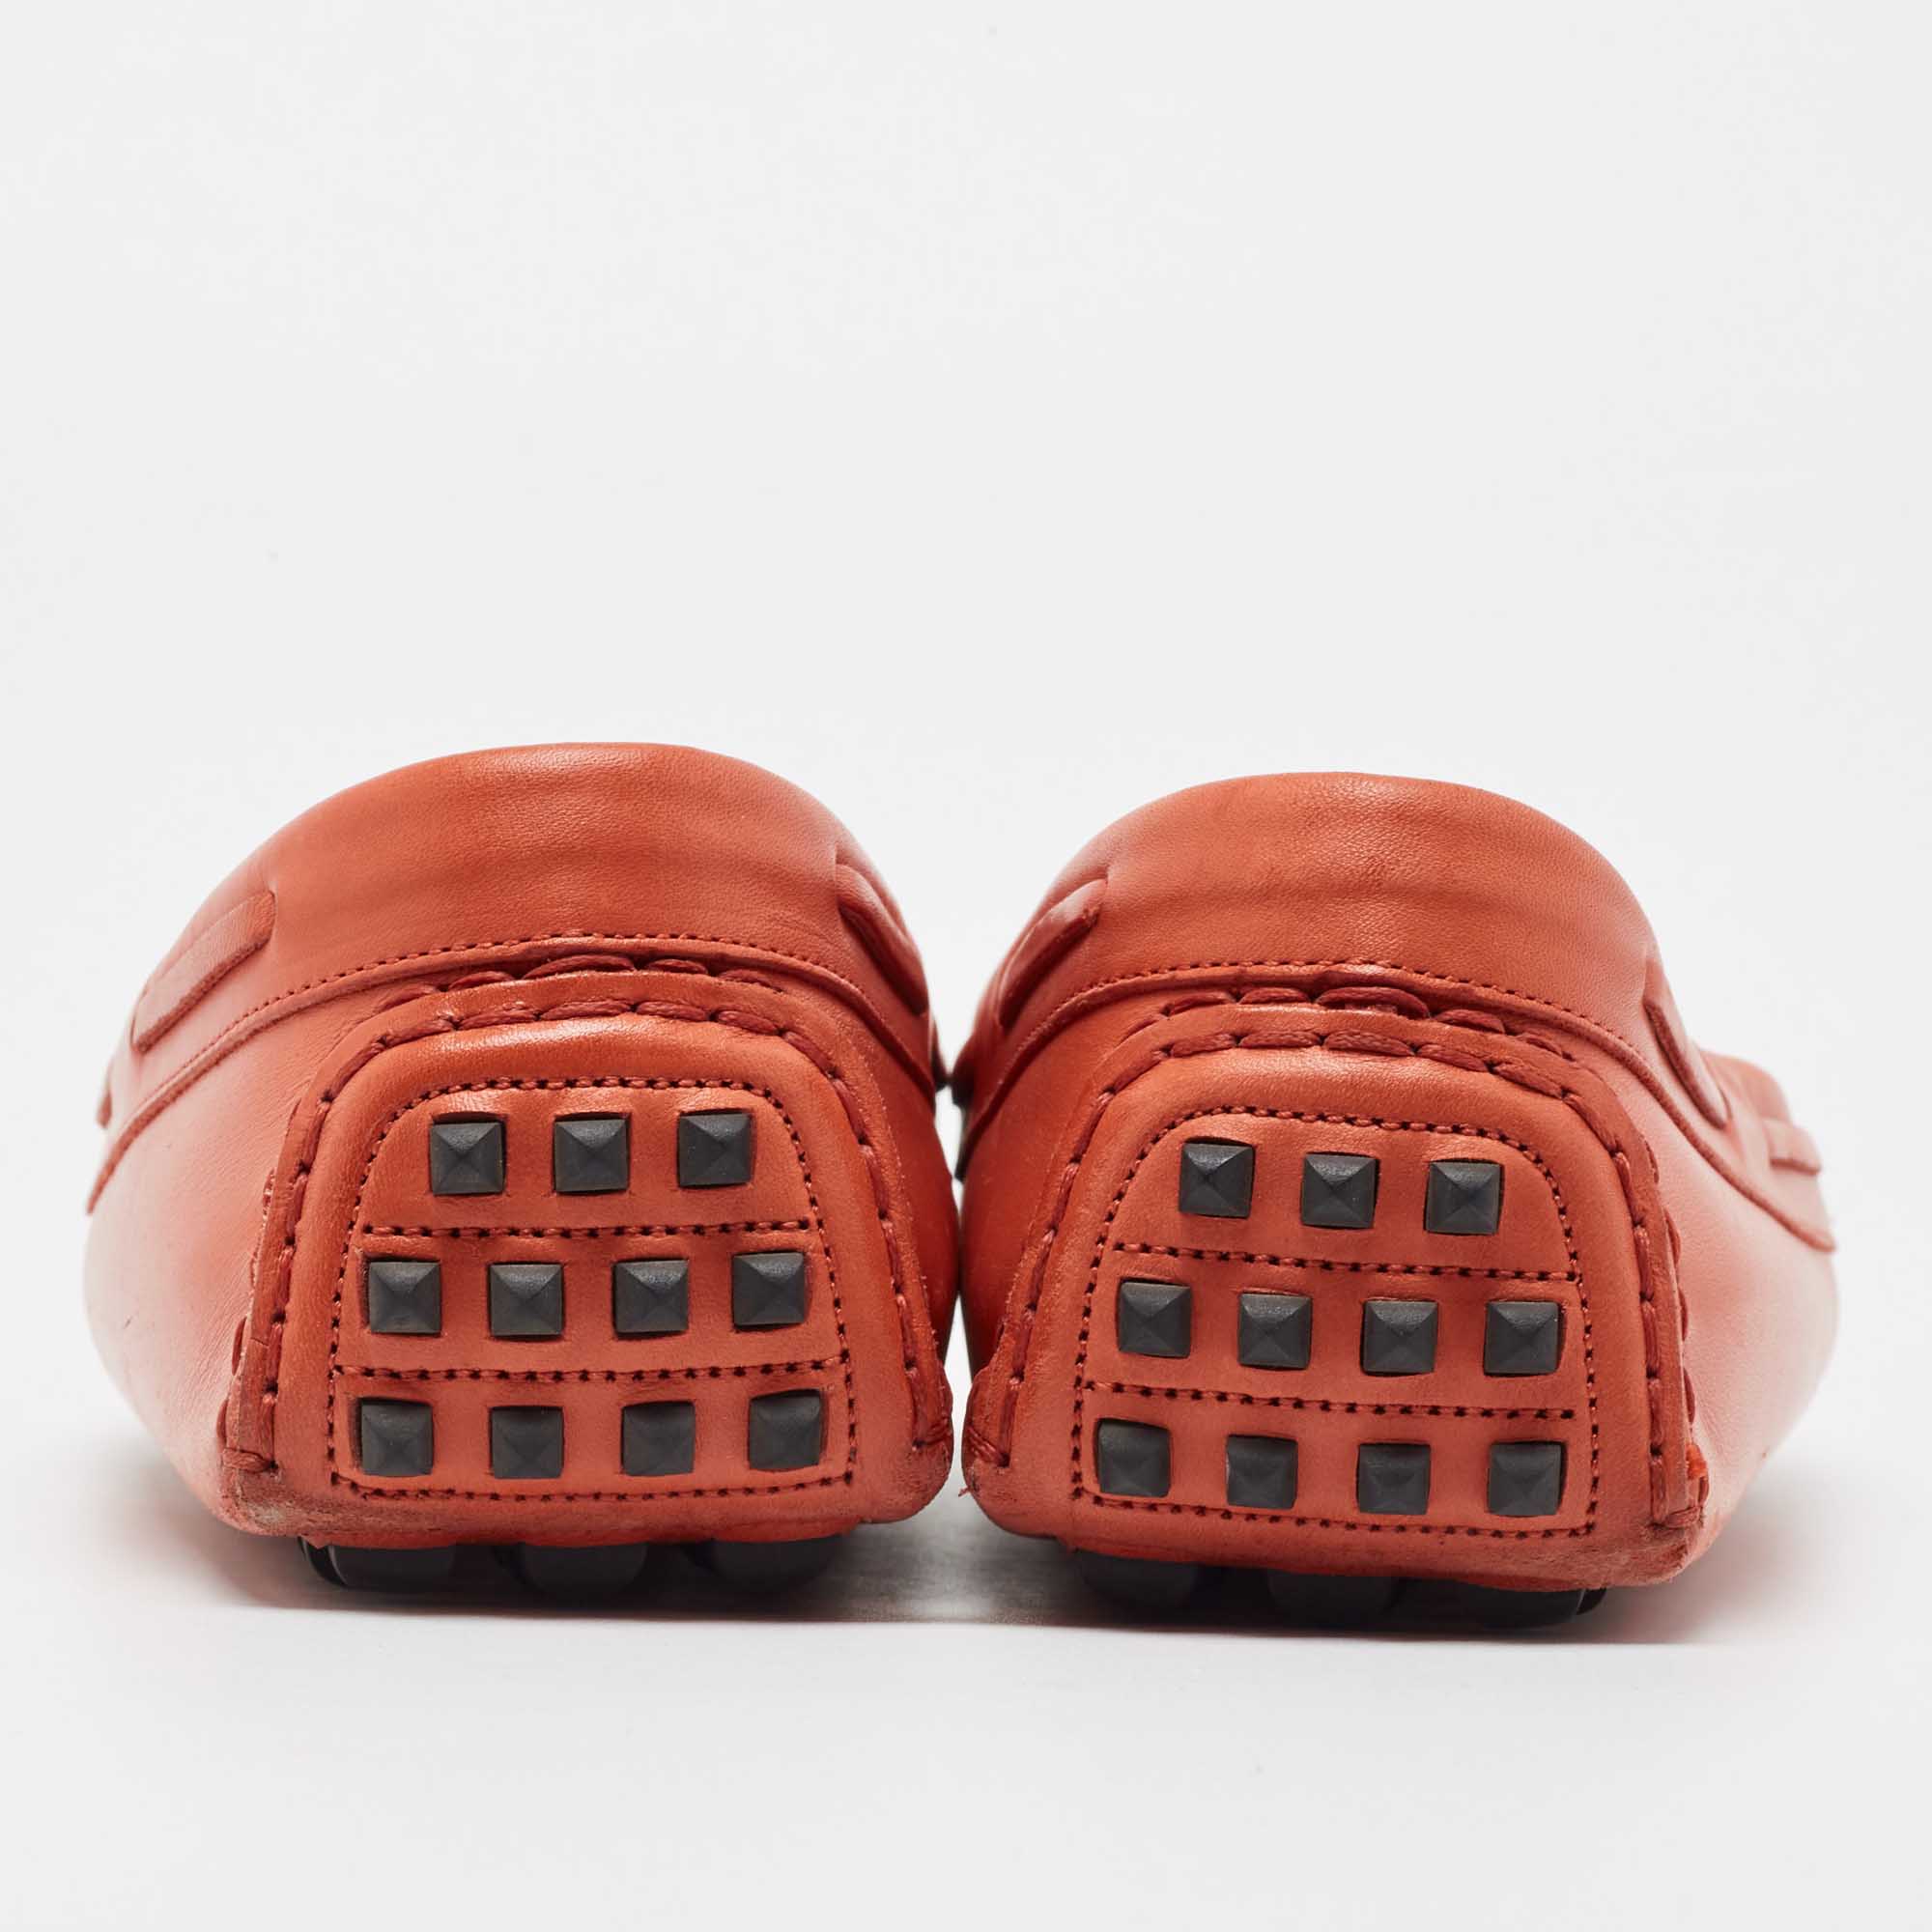 Hermes Orange Leather Irving Slip On Loafers Size 38